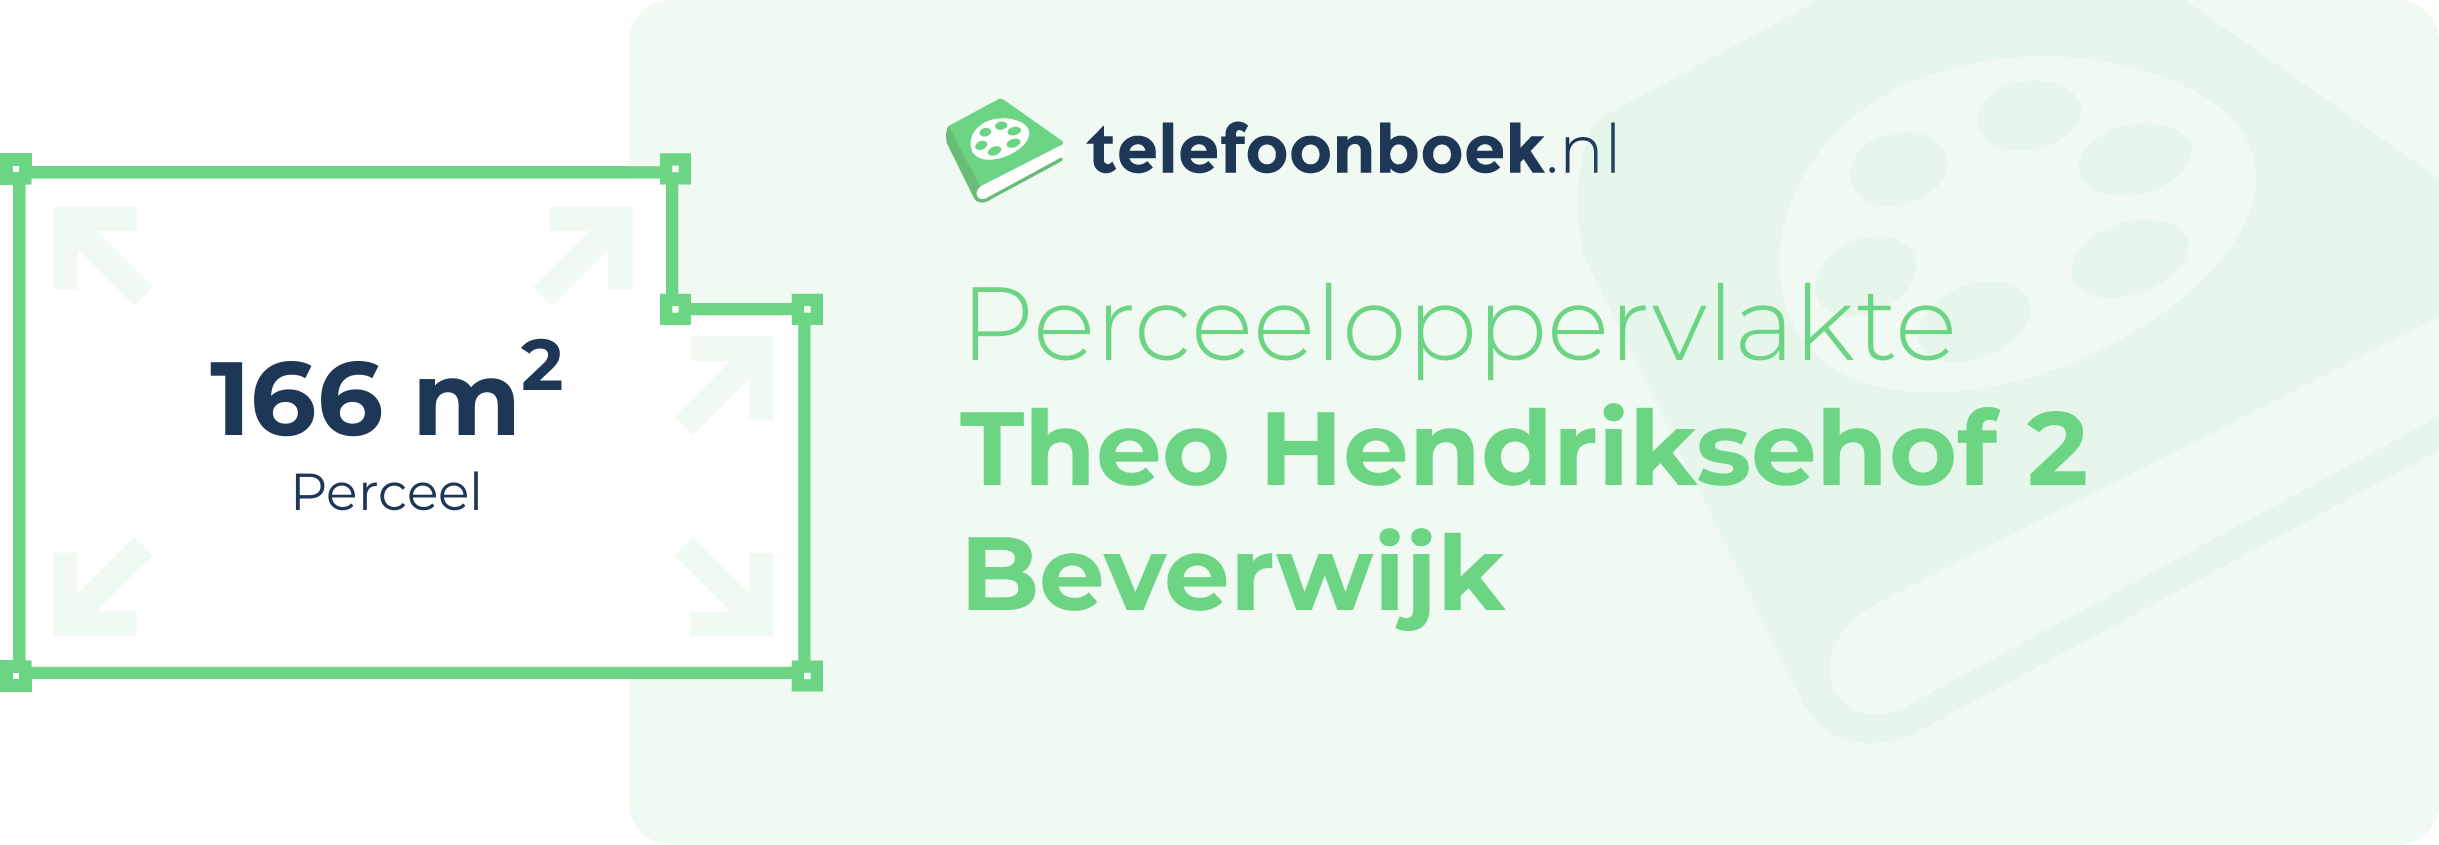 Perceeloppervlakte Theo Hendriksehof 2 Beverwijk